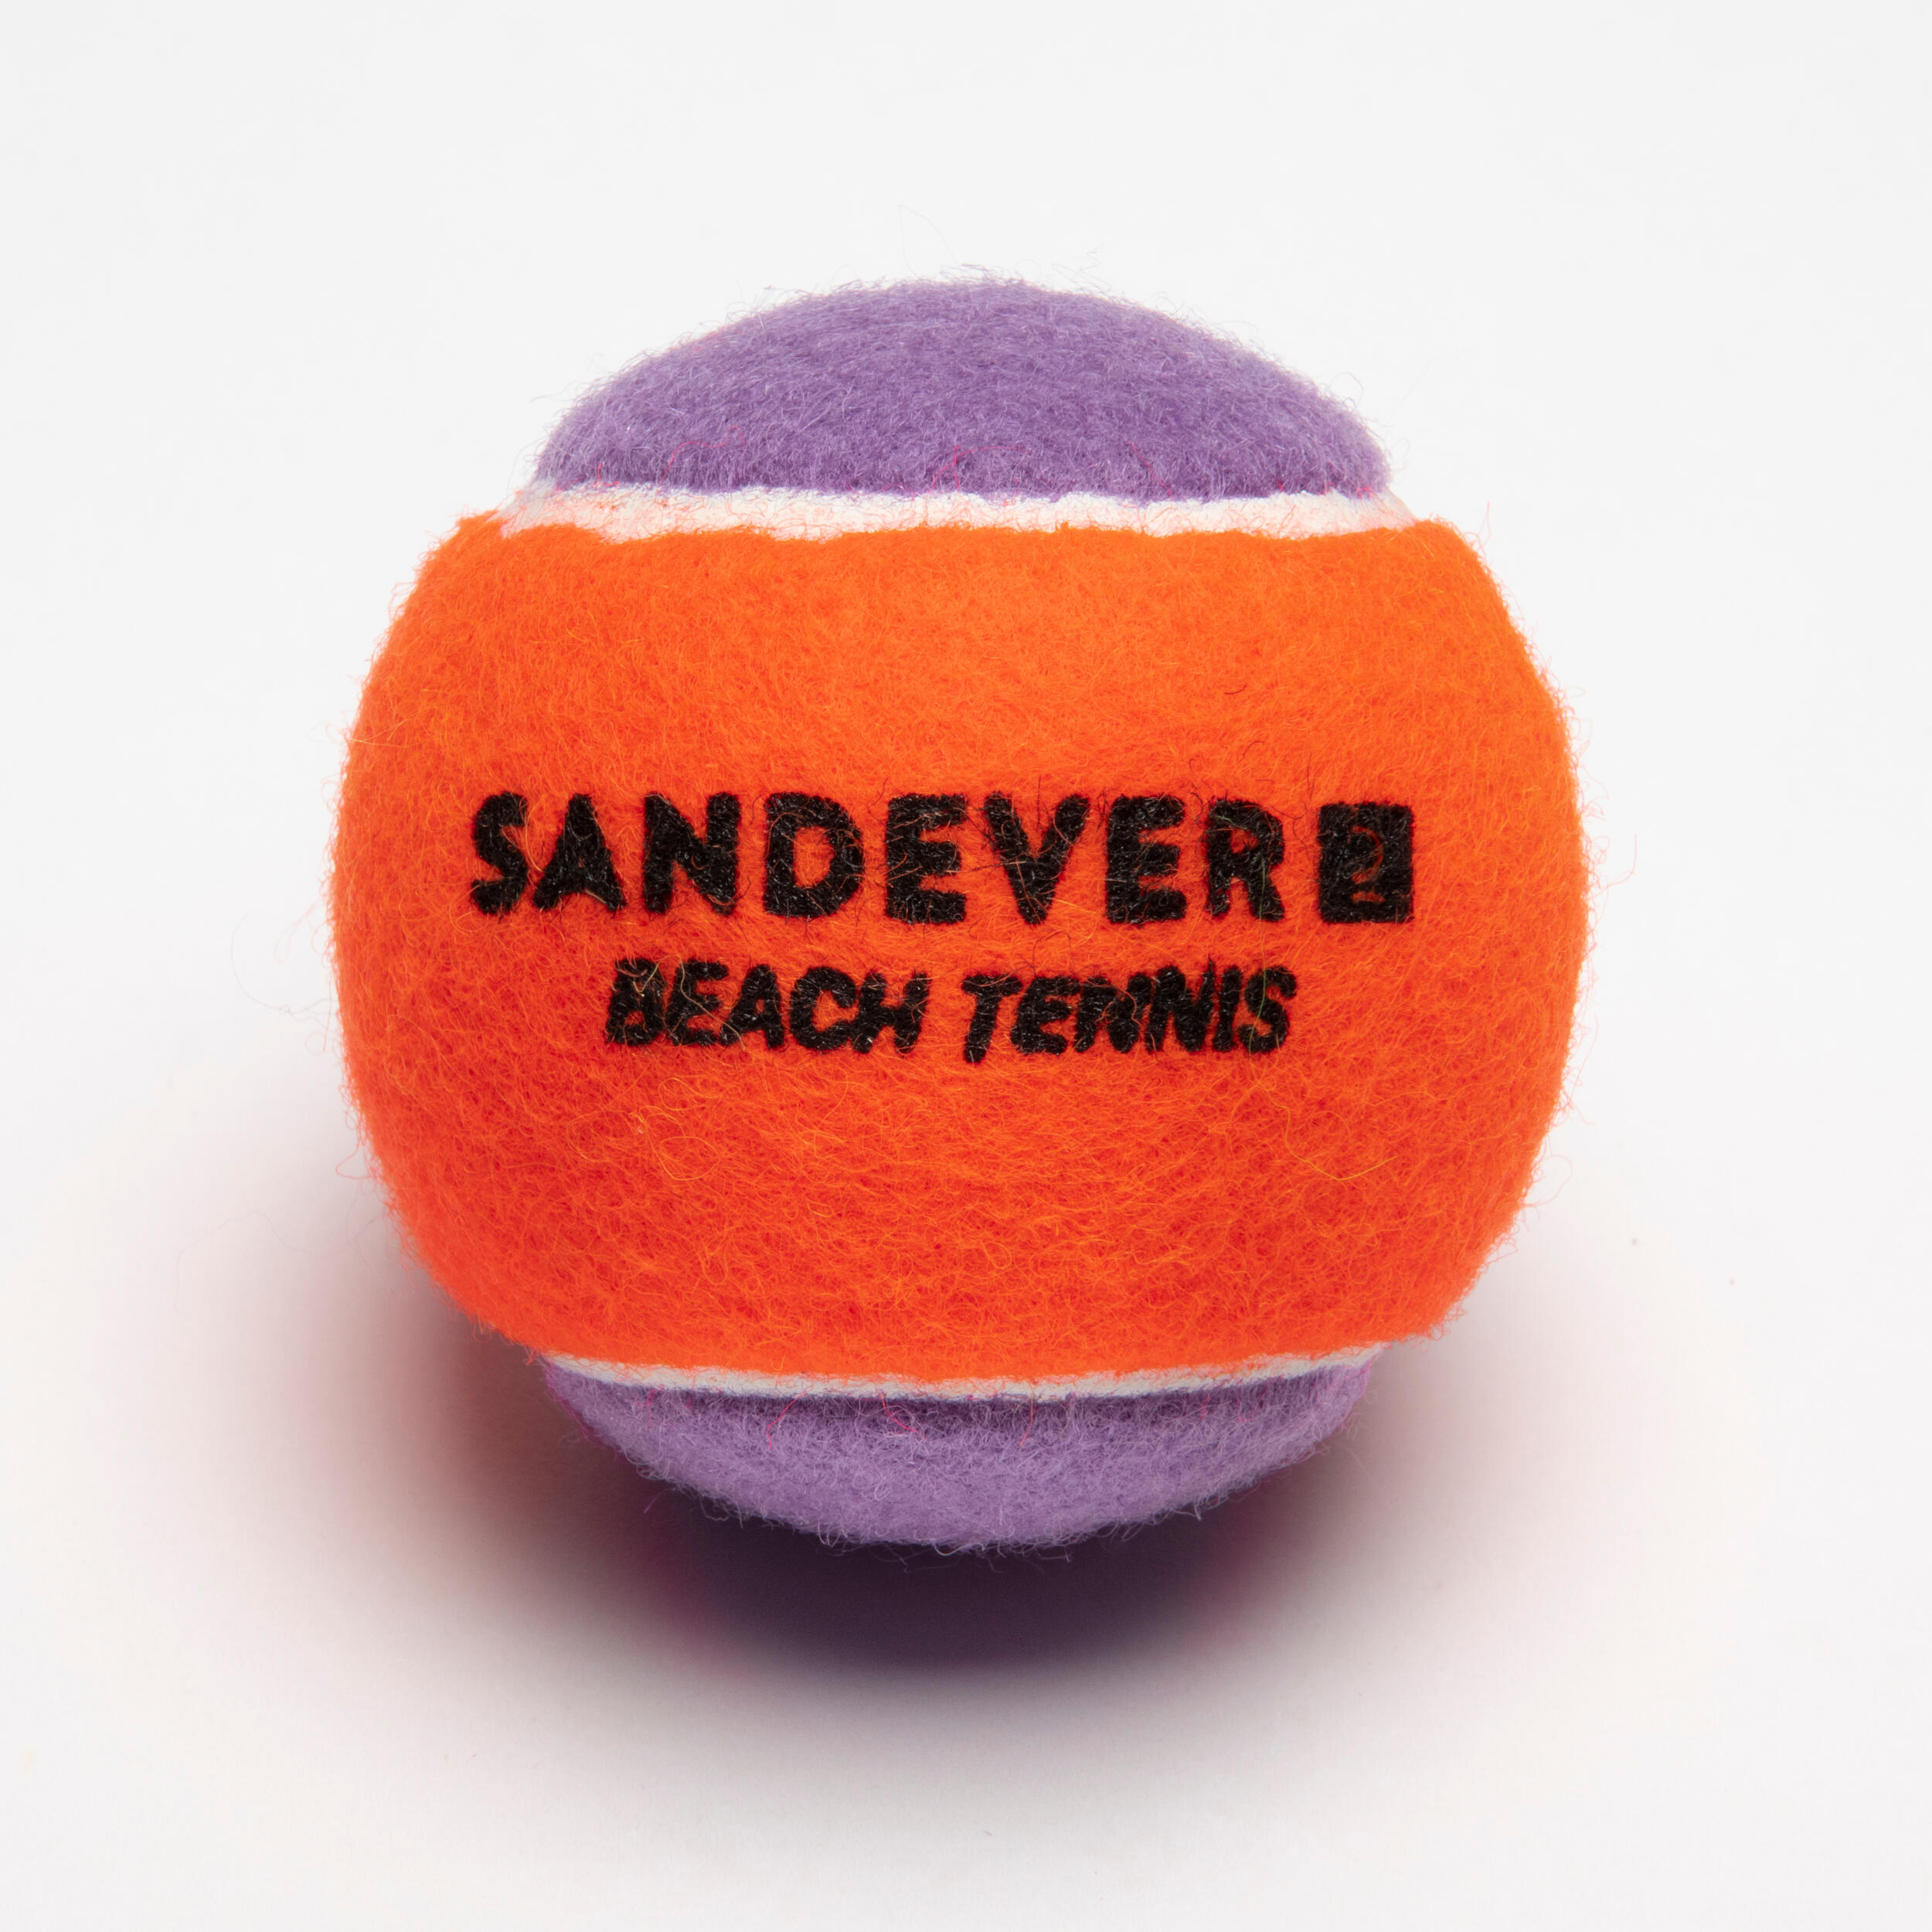 BTB 900 OP SD Beach Tennis Ball  - SANDEVER